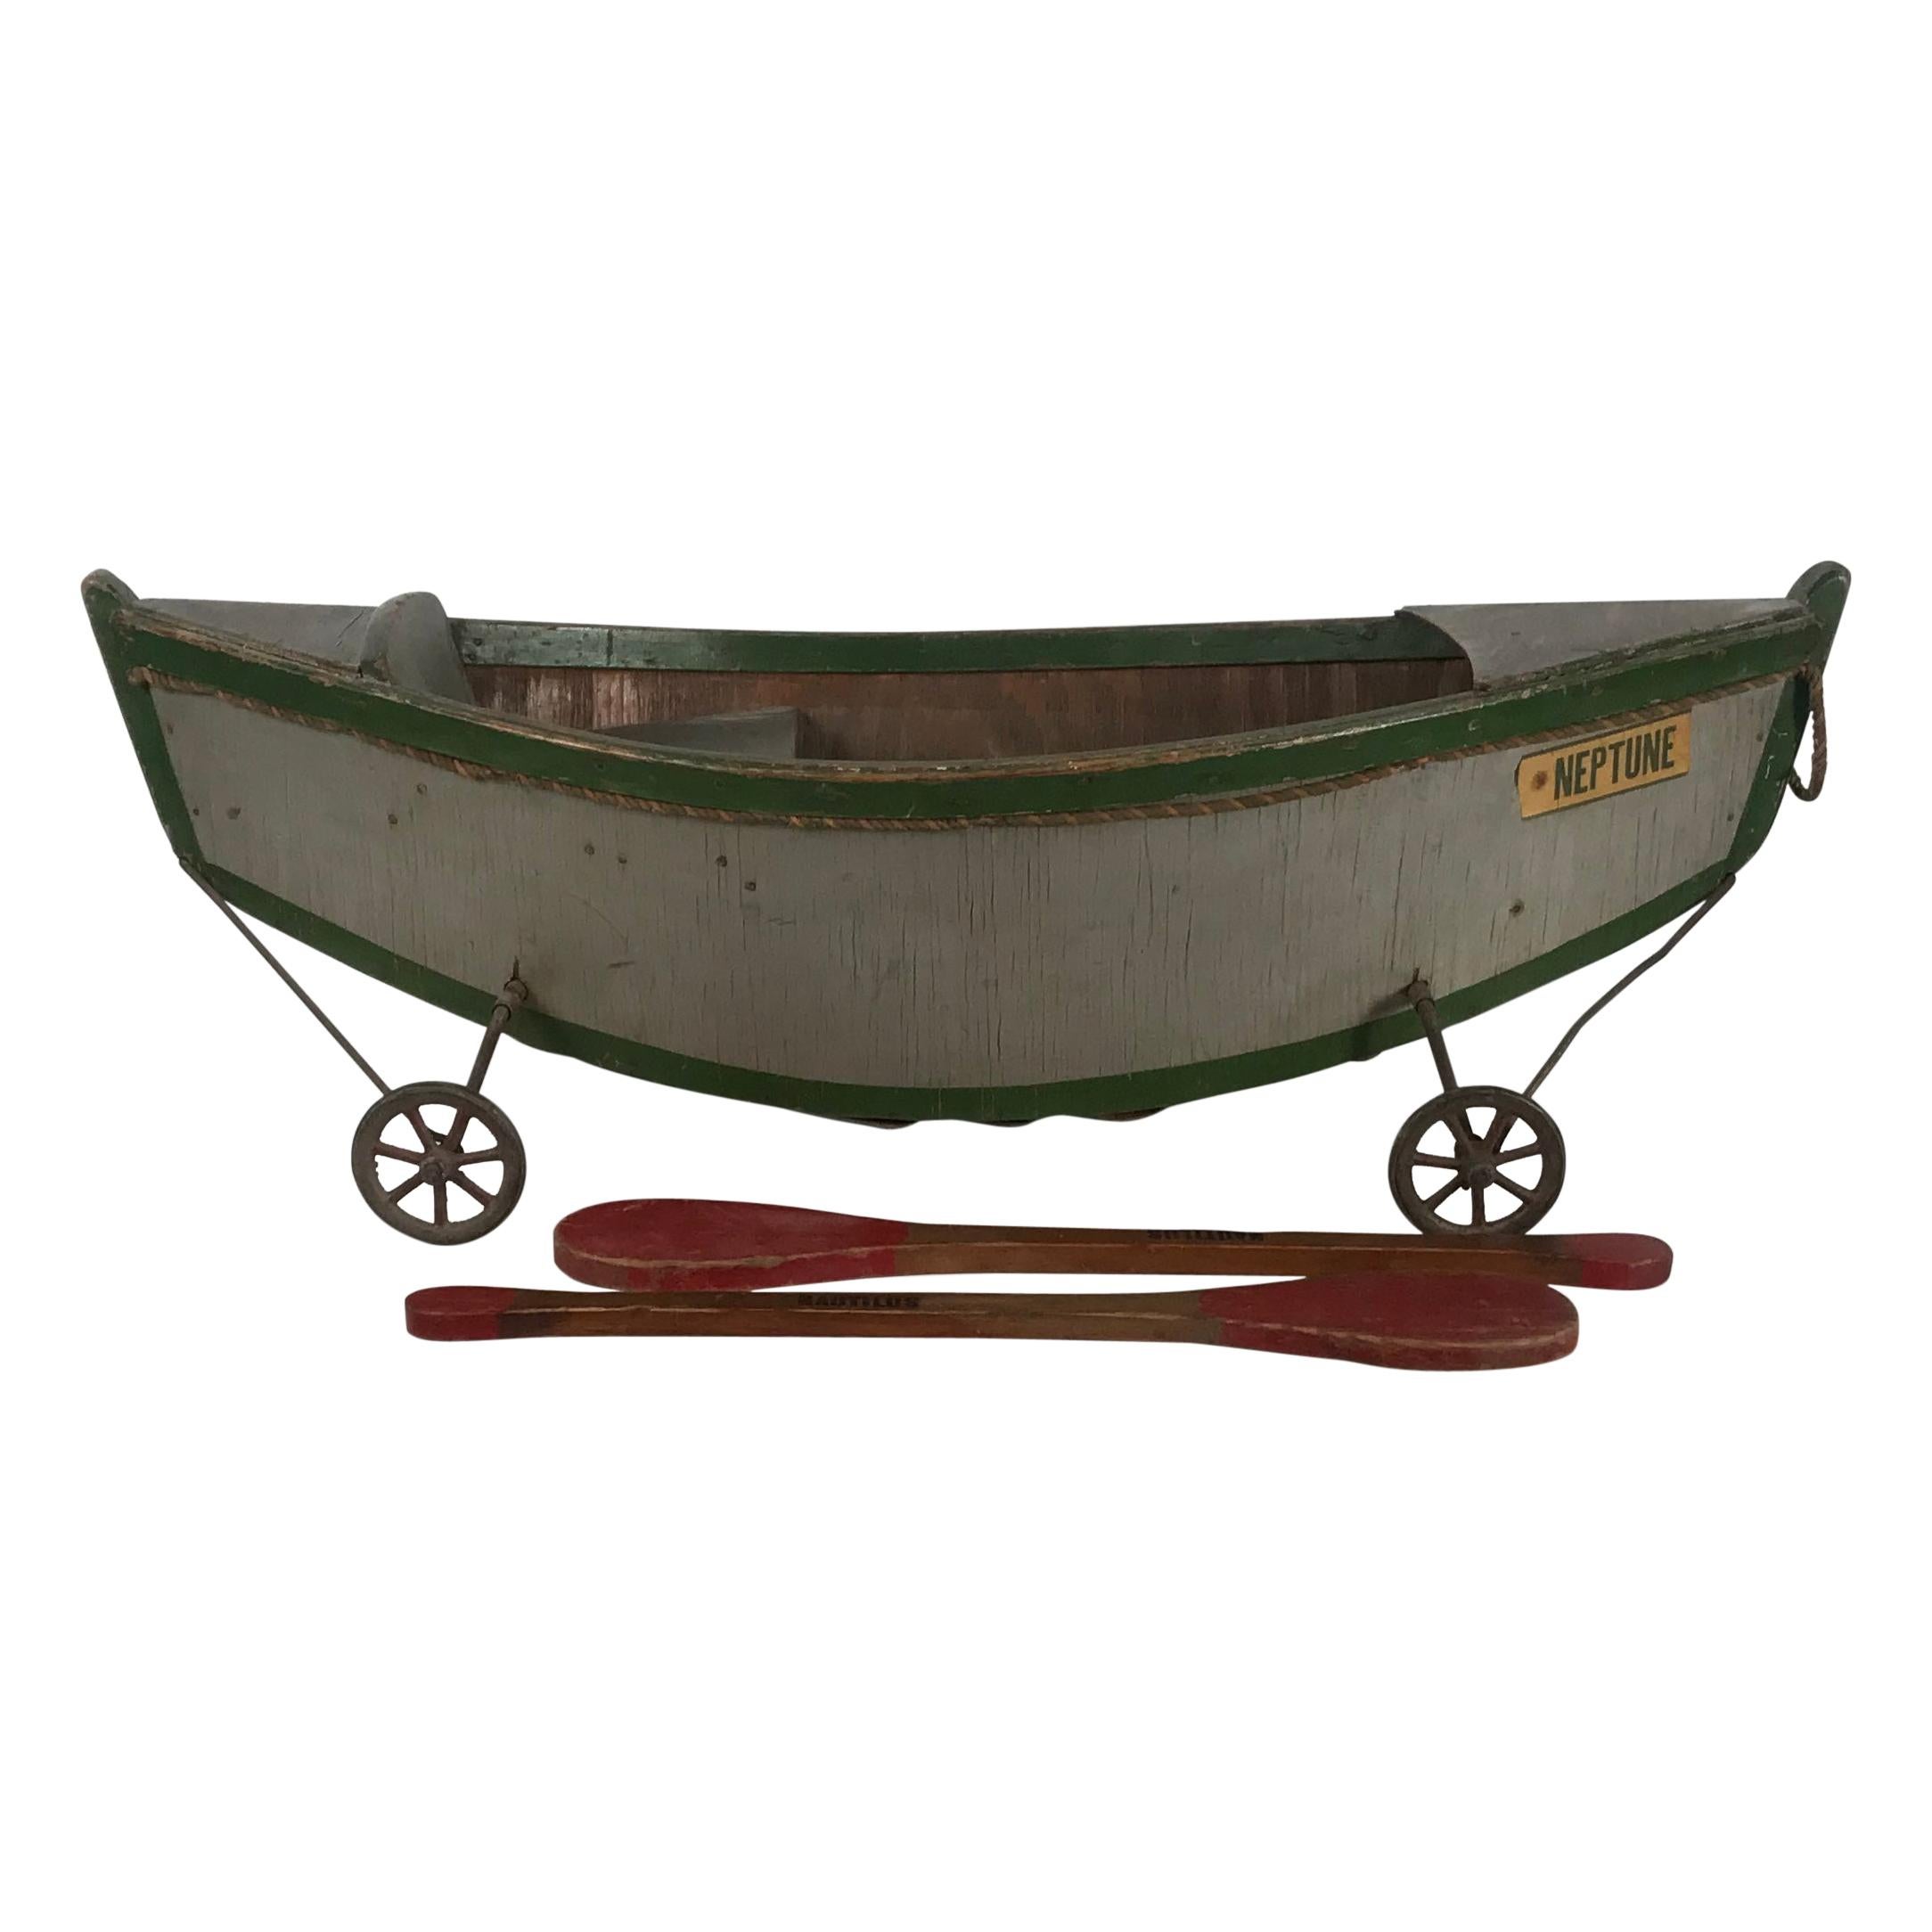 Rare bateau ancien en bois pour Child & Child's Ride on Wooden Toy Boat by Nautilus Toy Co. Londres 